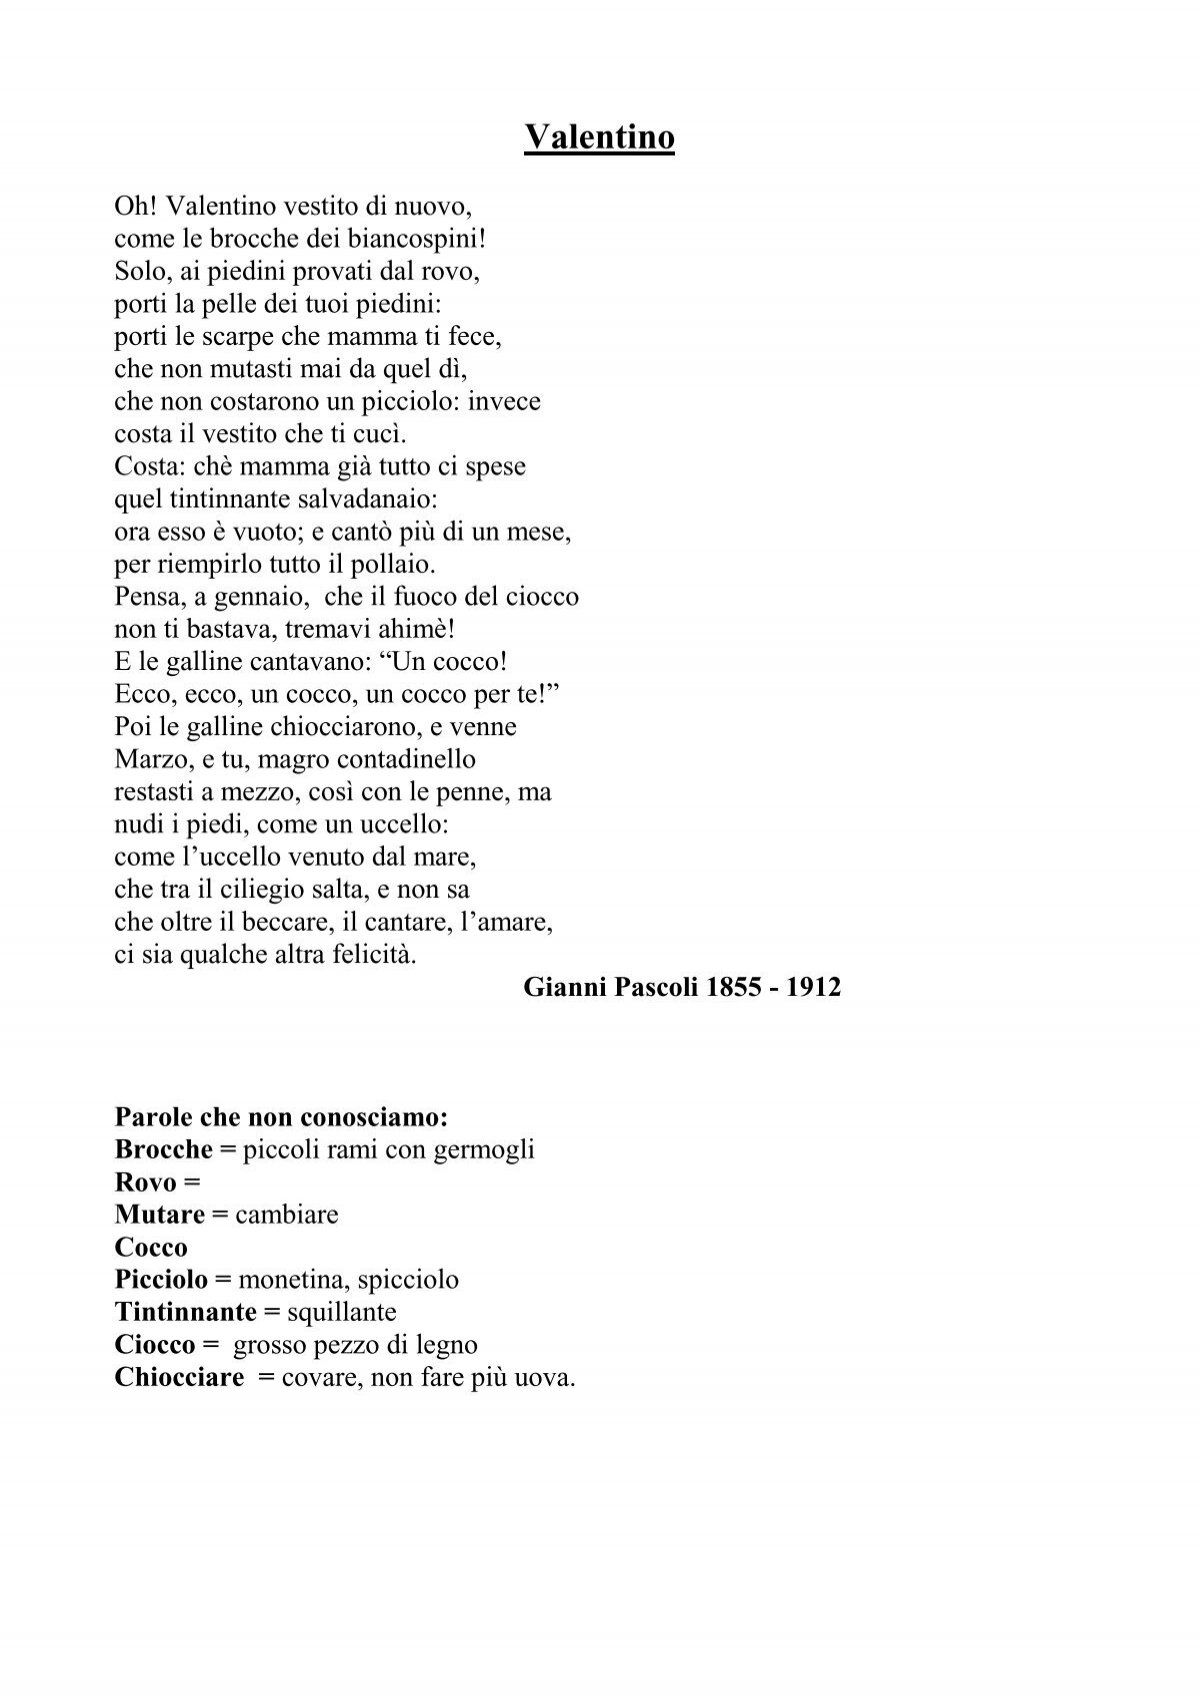 fond skovl musikkens Poesia Valentino - casieresalvatore.it